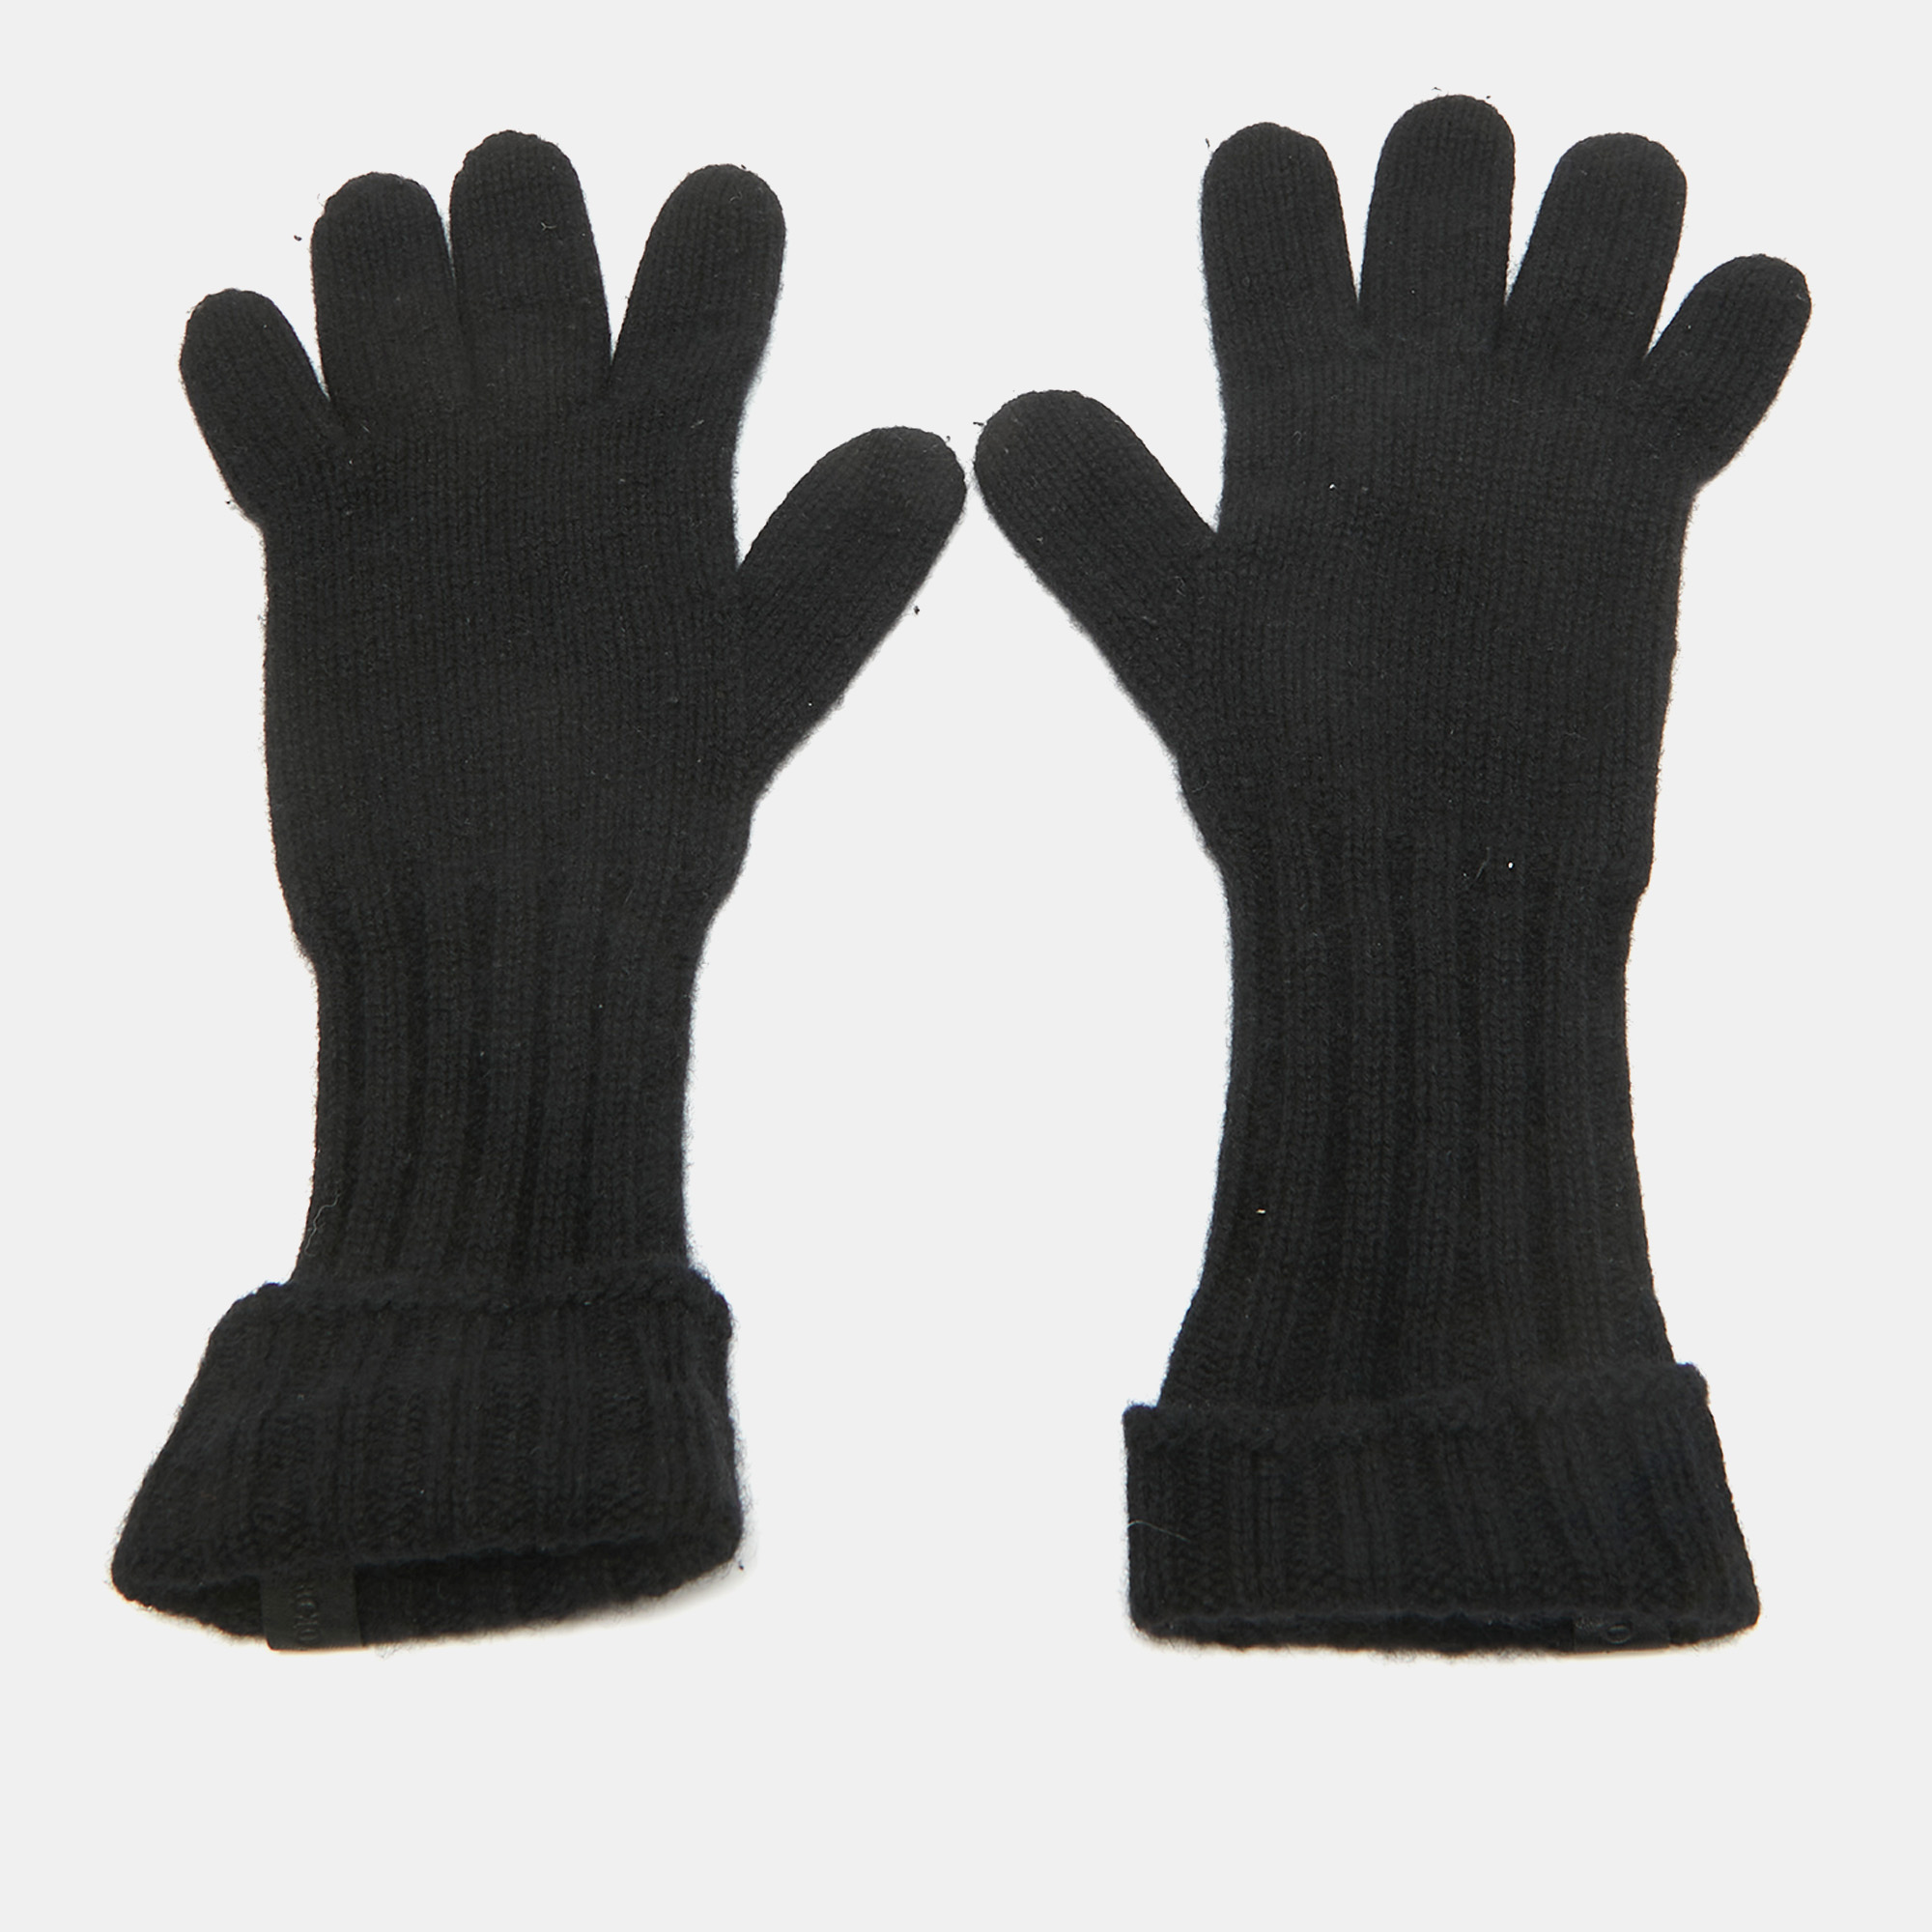 Giorgio armani black cashmere knit gloves m